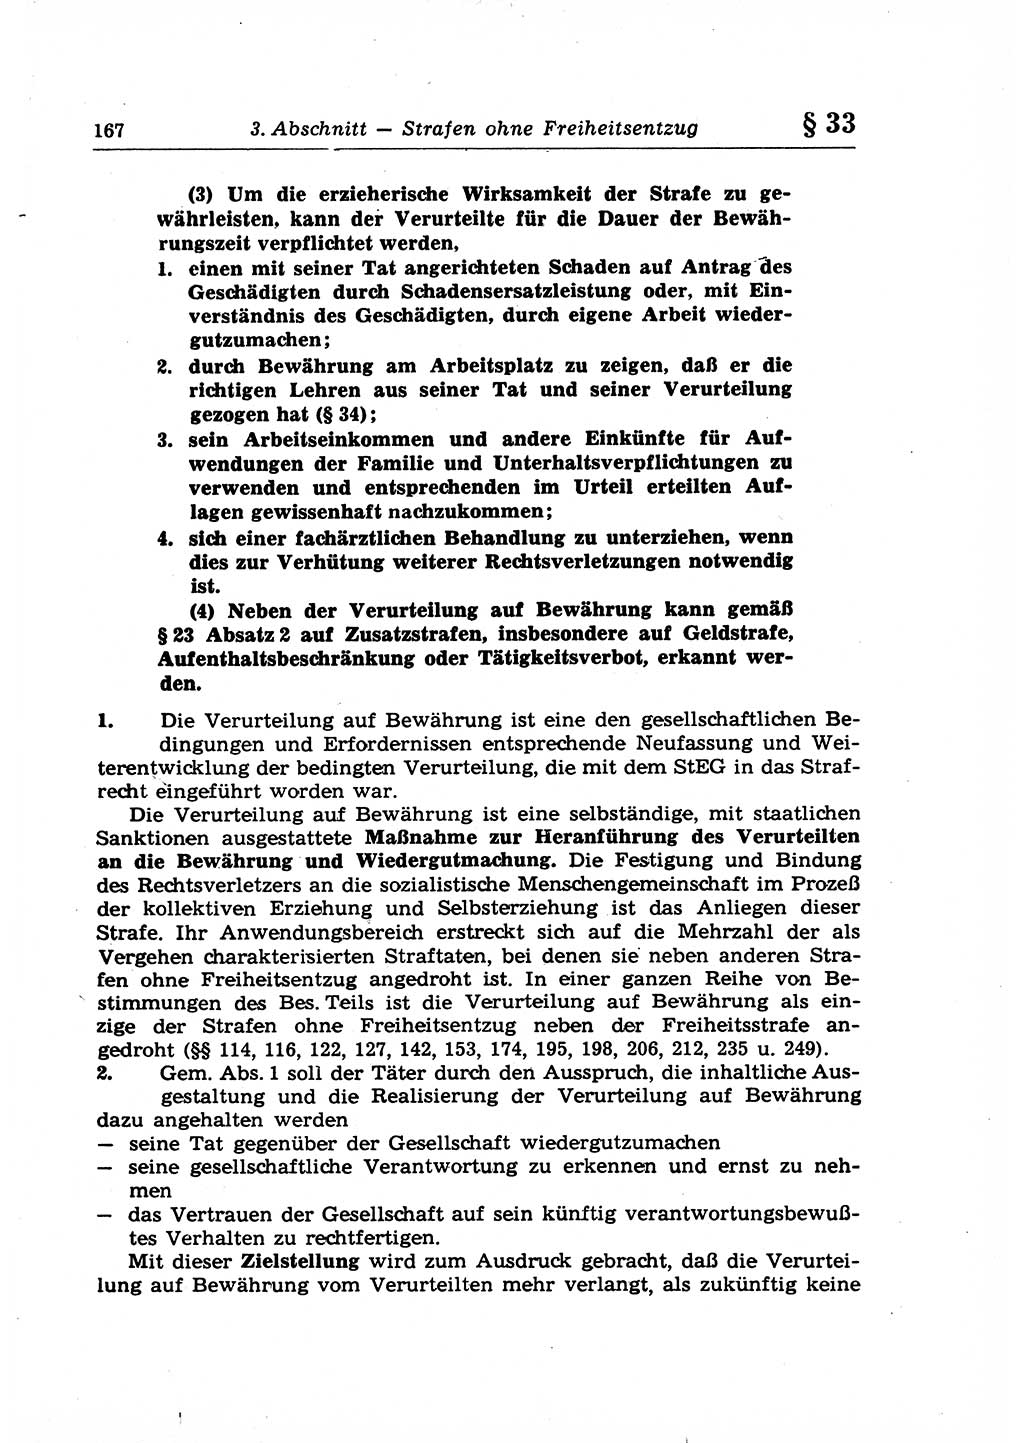 Strafrecht der Deutschen Demokratischen Republik (DDR), Lehrkommentar zum Strafgesetzbuch (StGB), Allgemeiner Teil 1969, Seite 167 (Strafr. DDR Lehrkomm. StGB AT 1969, S. 167)